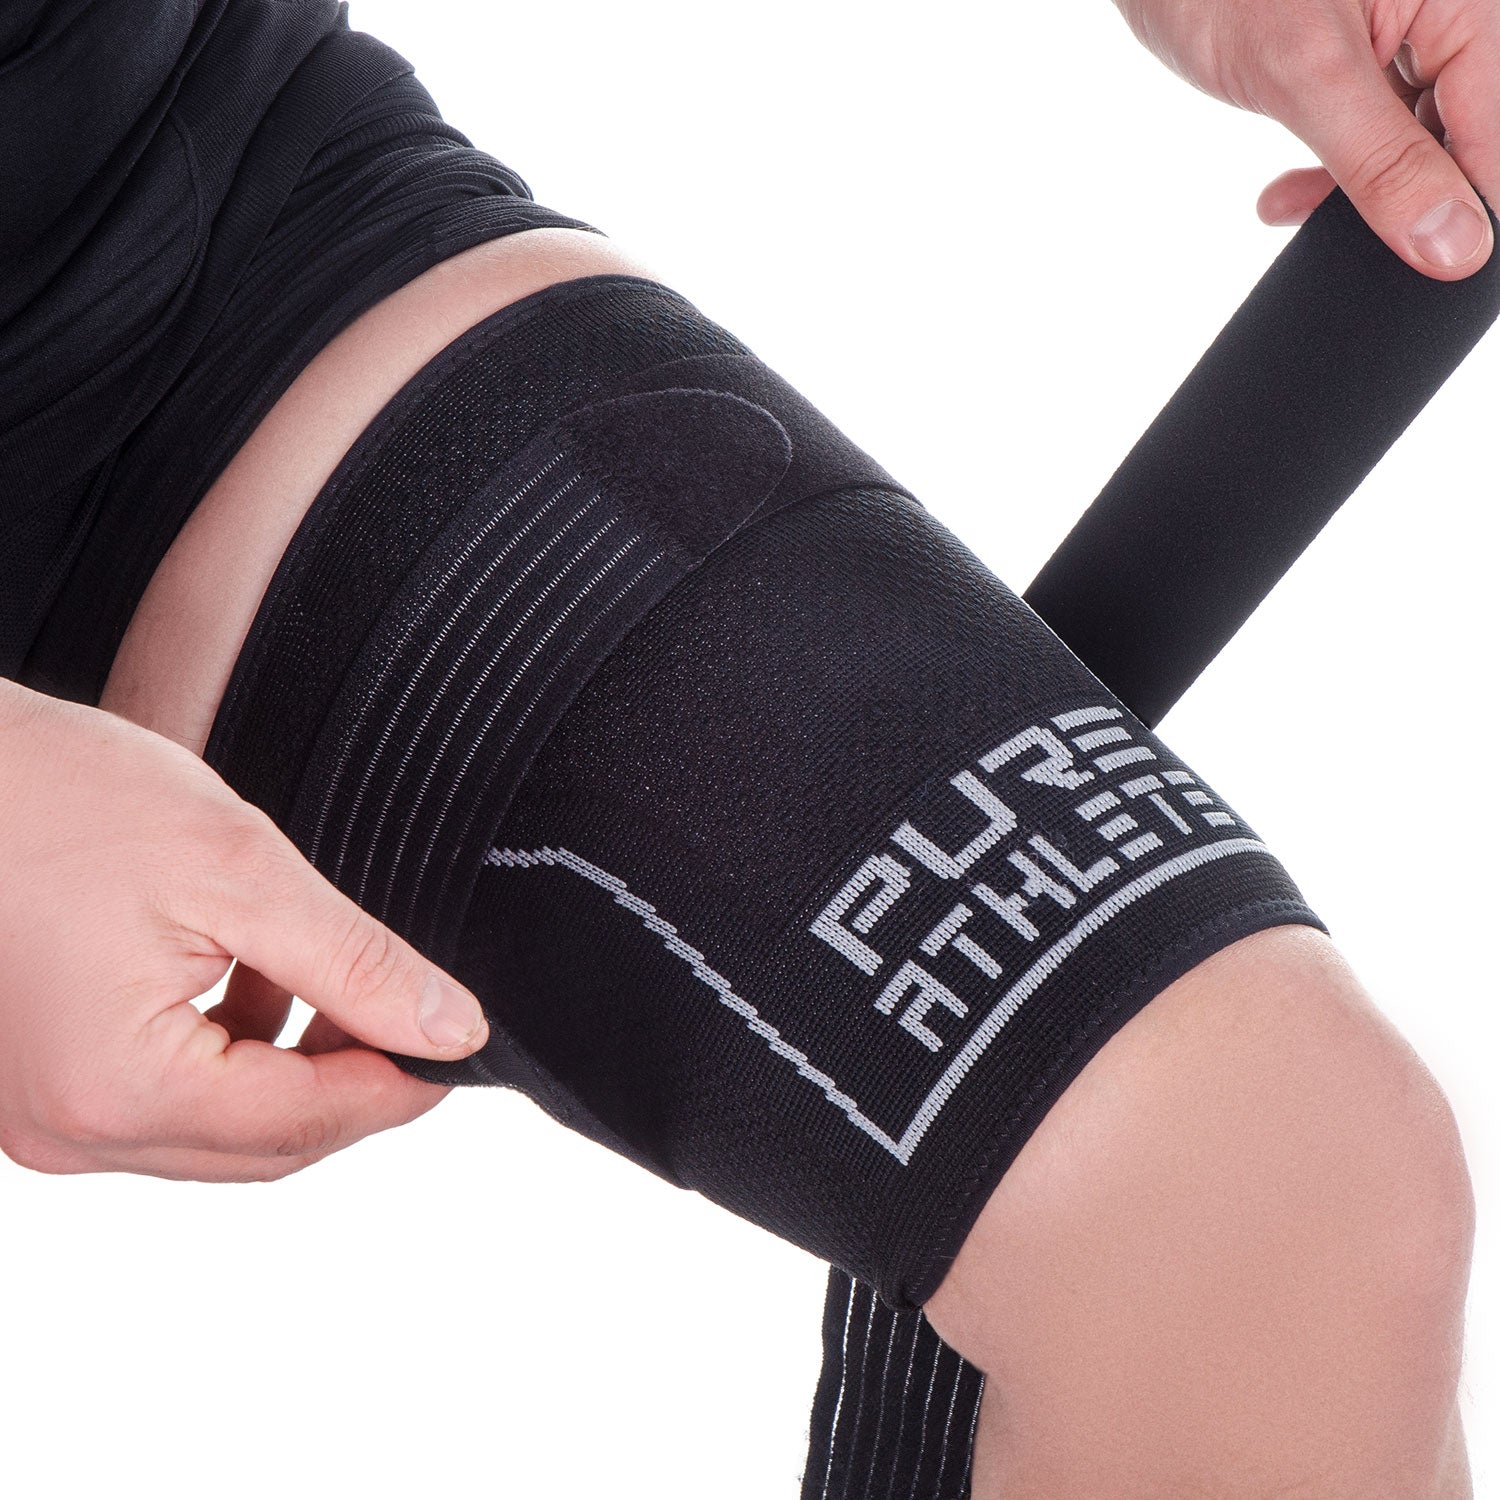 supregear Thigh Brace, Adjustable Hamstring Compression Sleeve for Women  Men - Black 